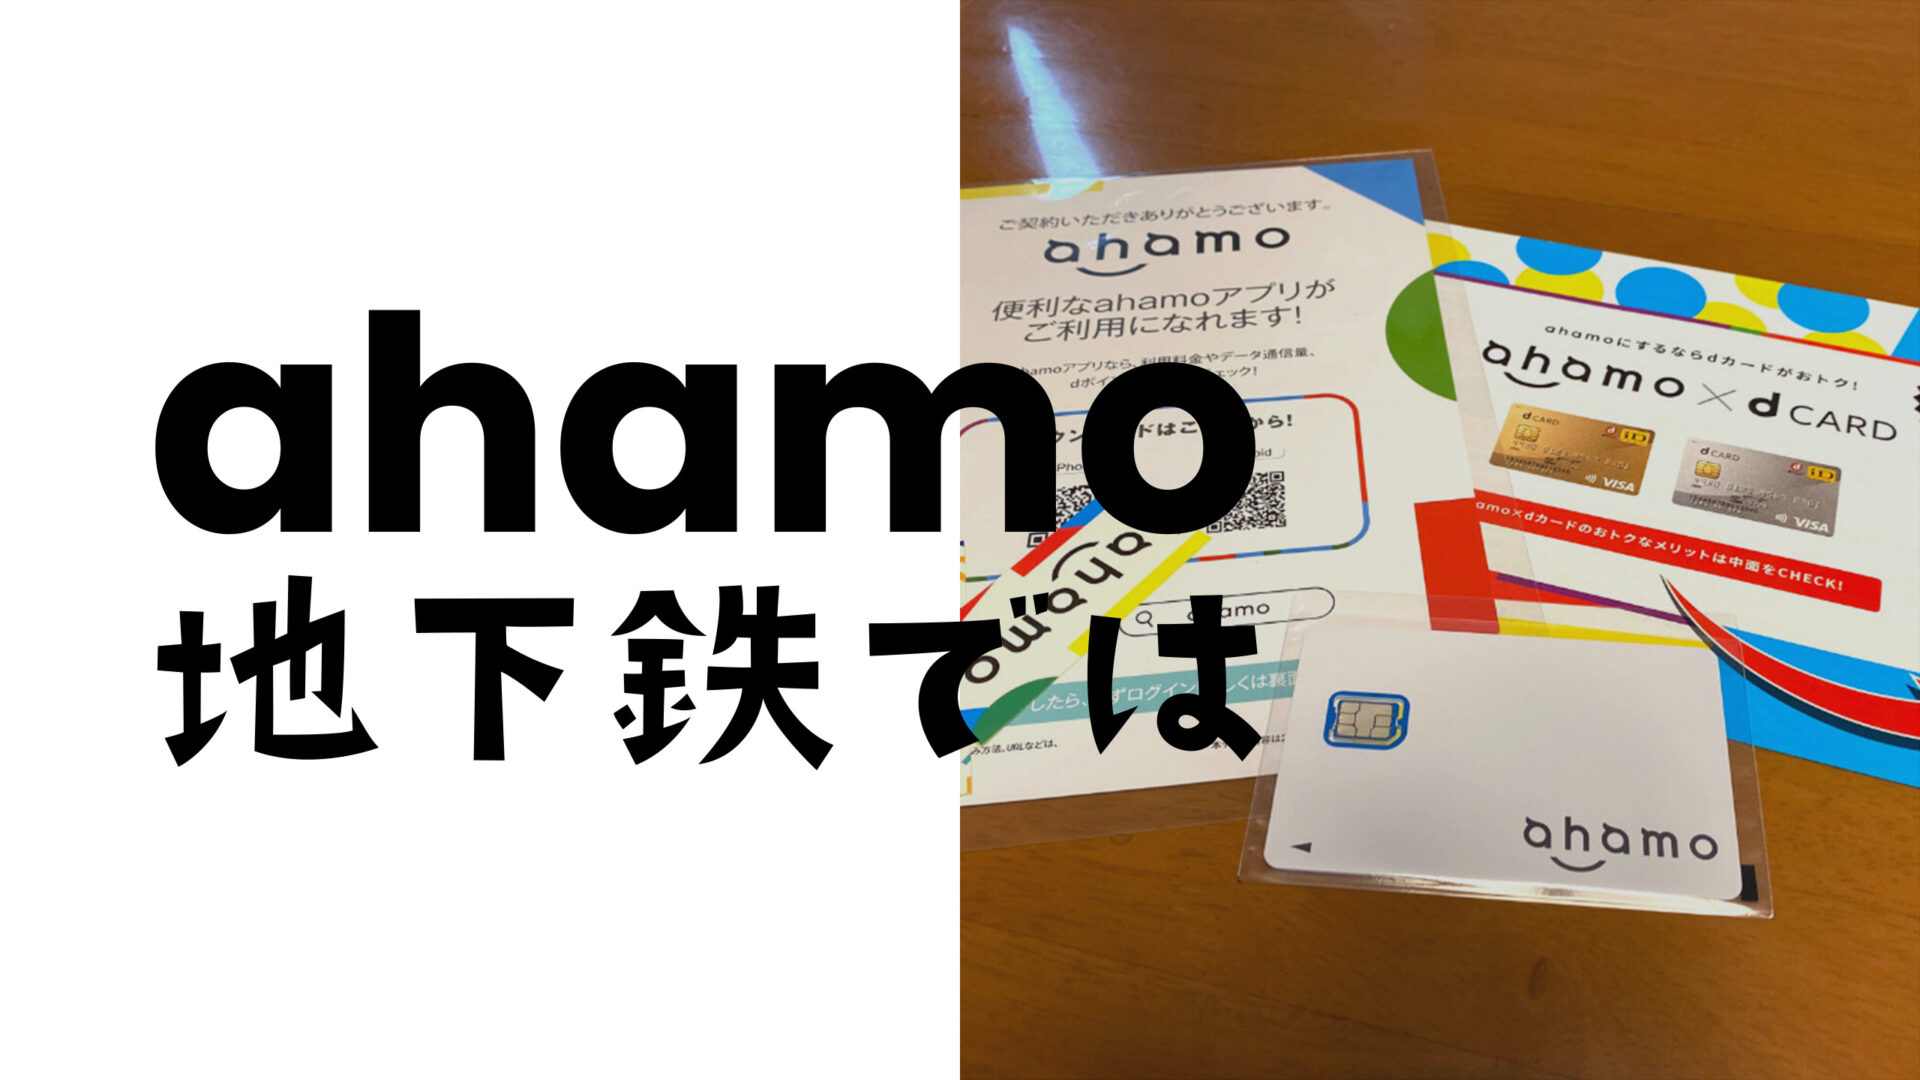 ahamo(アハモ)は地下鉄で電波は？東京メトロ路線網で実測。のサムネイル画像